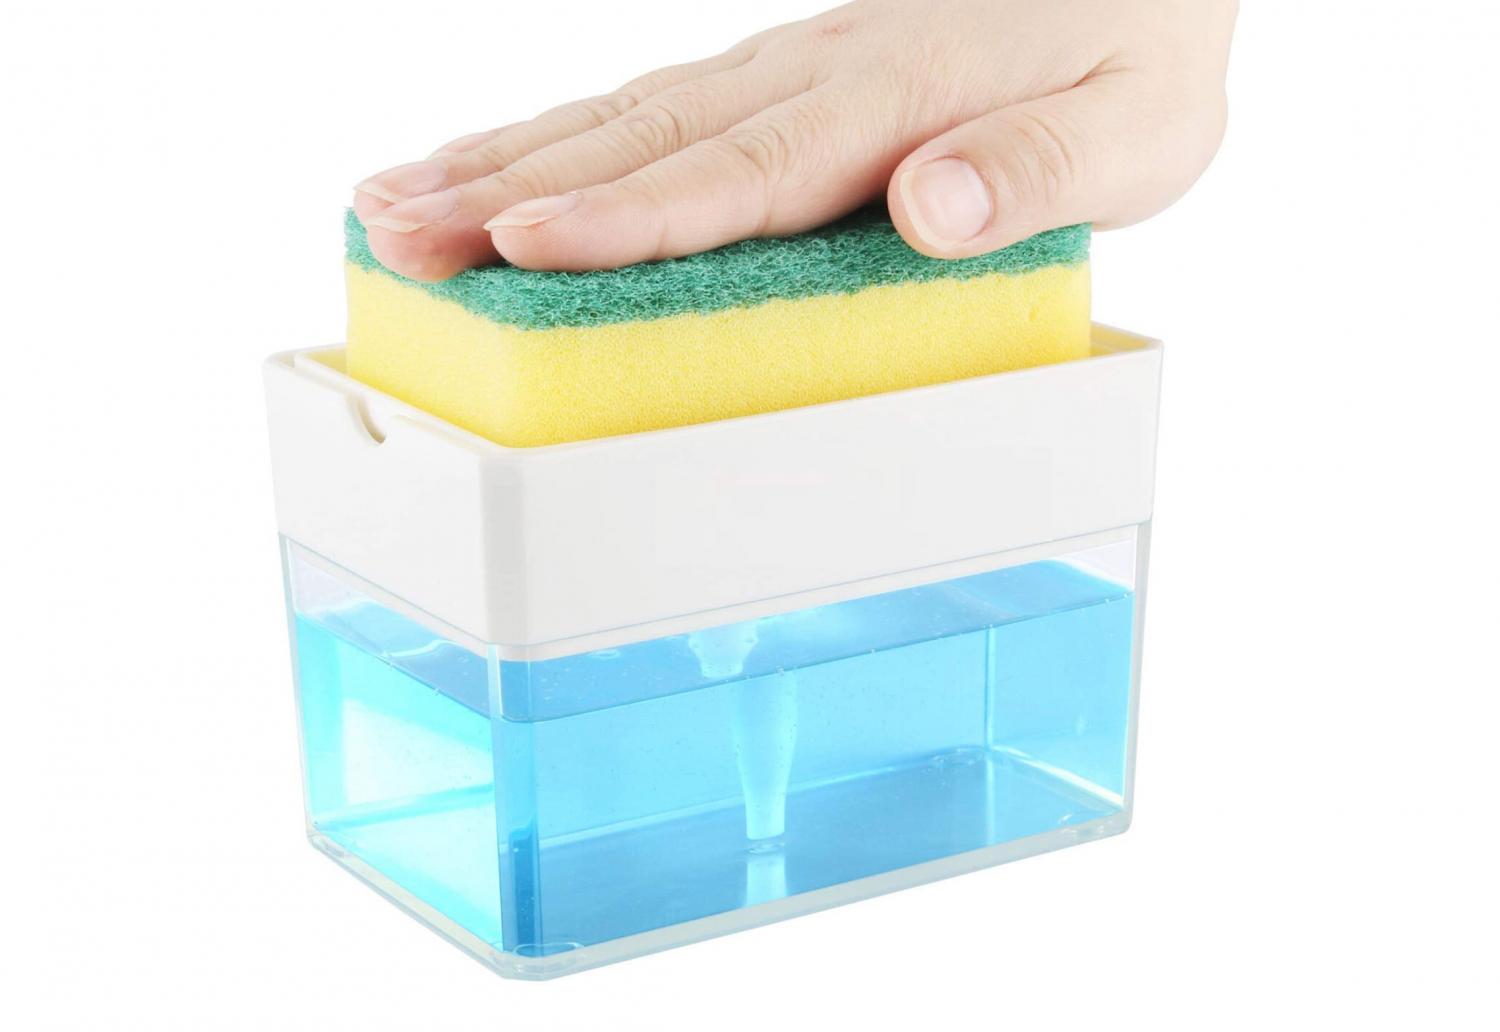 Sponge Soap Dispenser - Instantly Pump Dish Soap Into Your Sponge